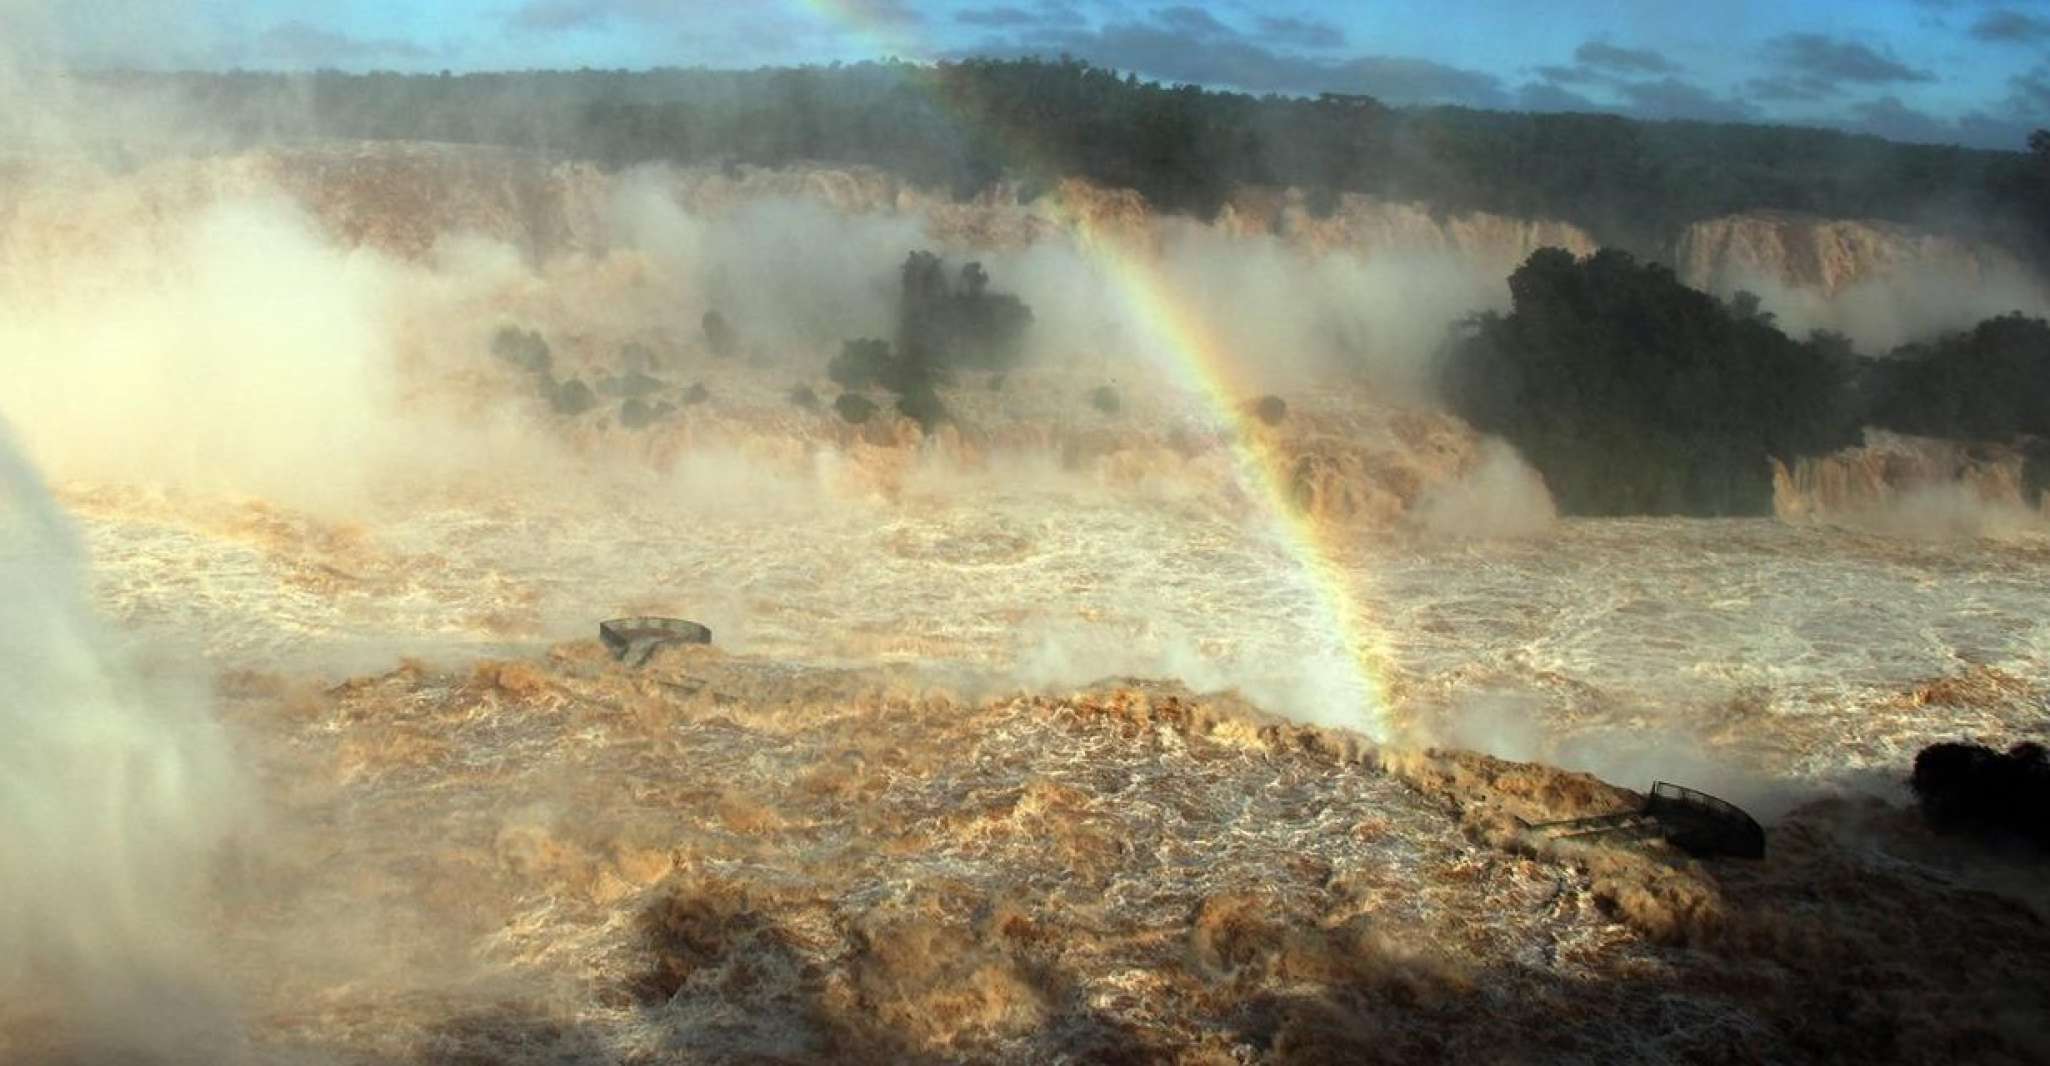 Full Day Iguazu Falls Brazil and Argentina Sides - Housity